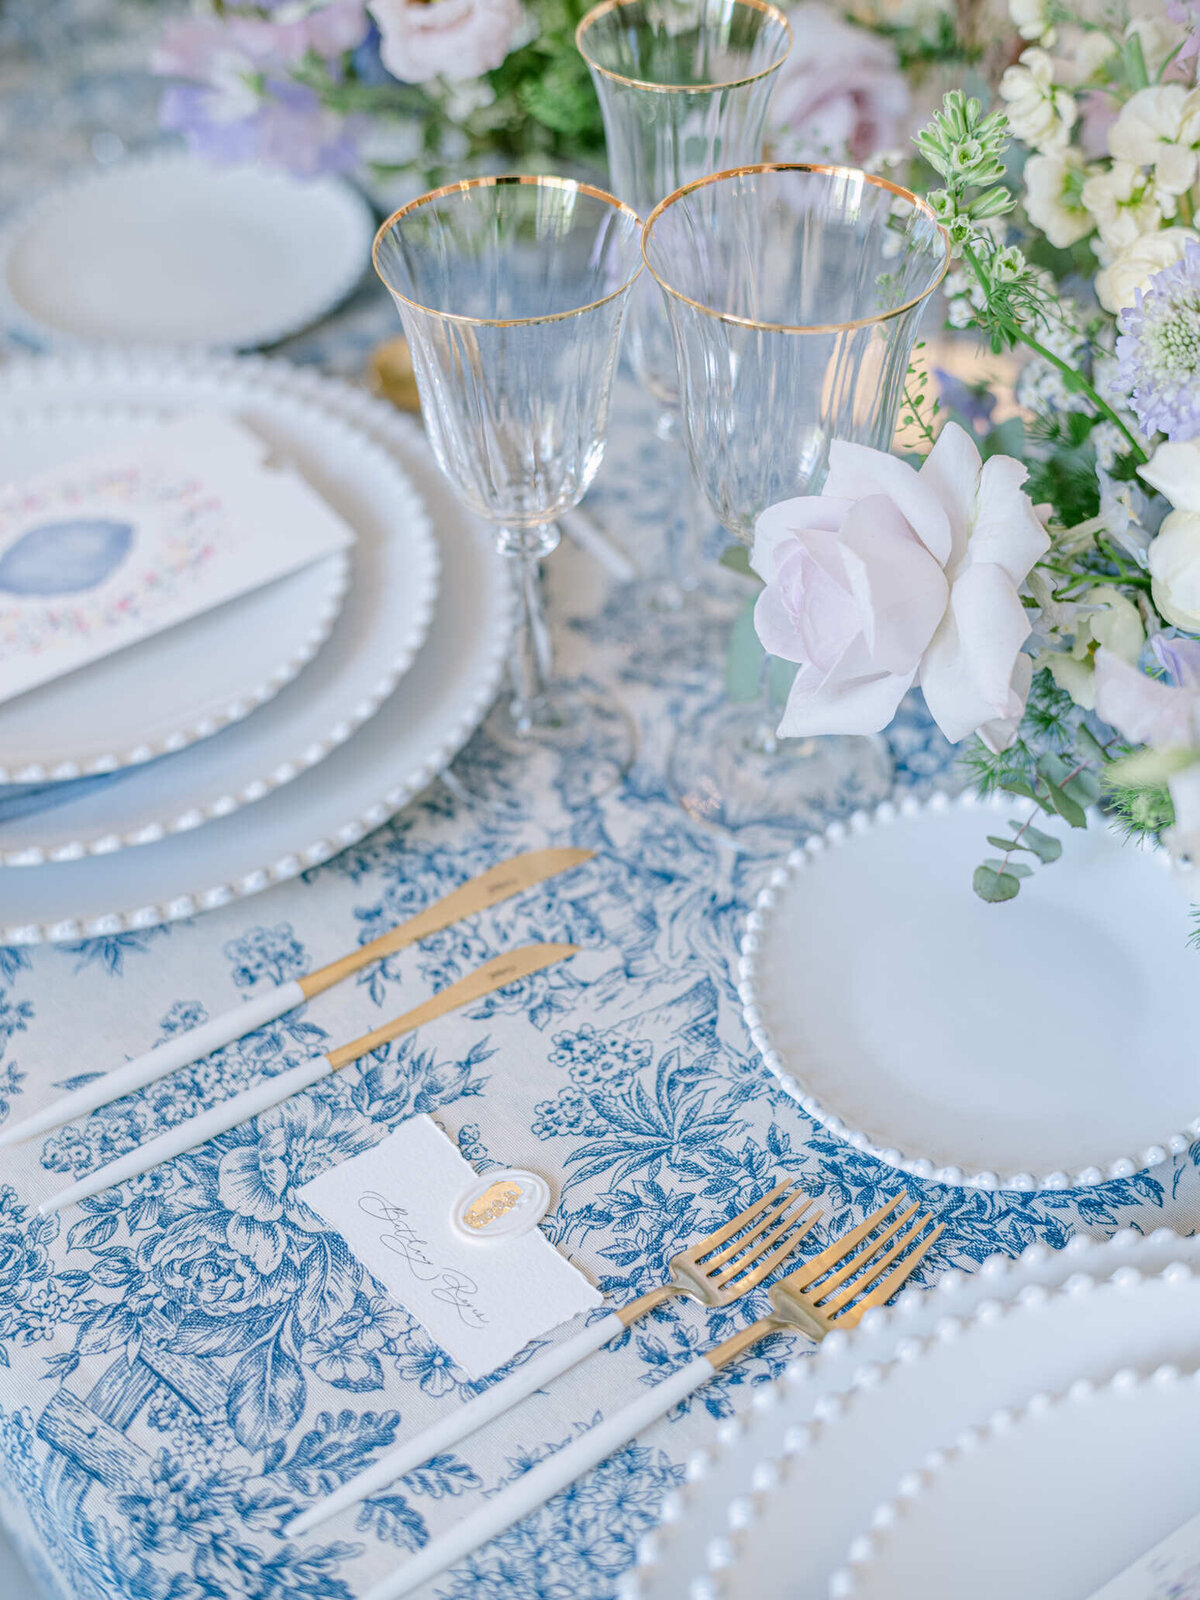 Chateau-de-Ferriere-Wedding-table-design-10